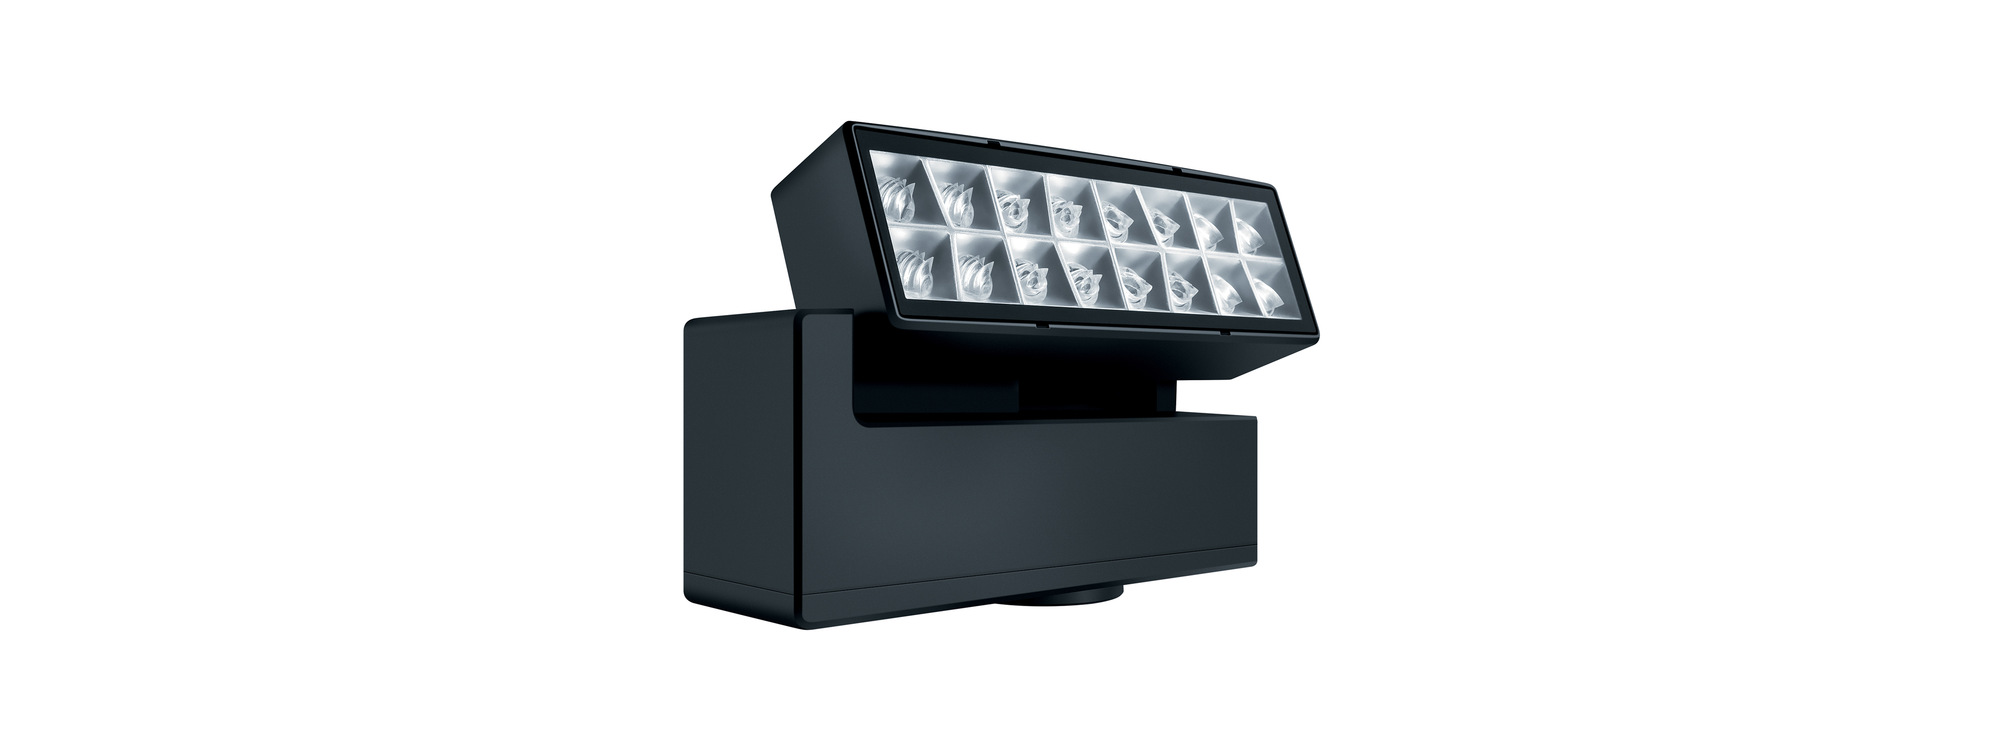 室外照明系统‘NIGHTSIGHT’于本周2016年德国法兰克福照明展推出